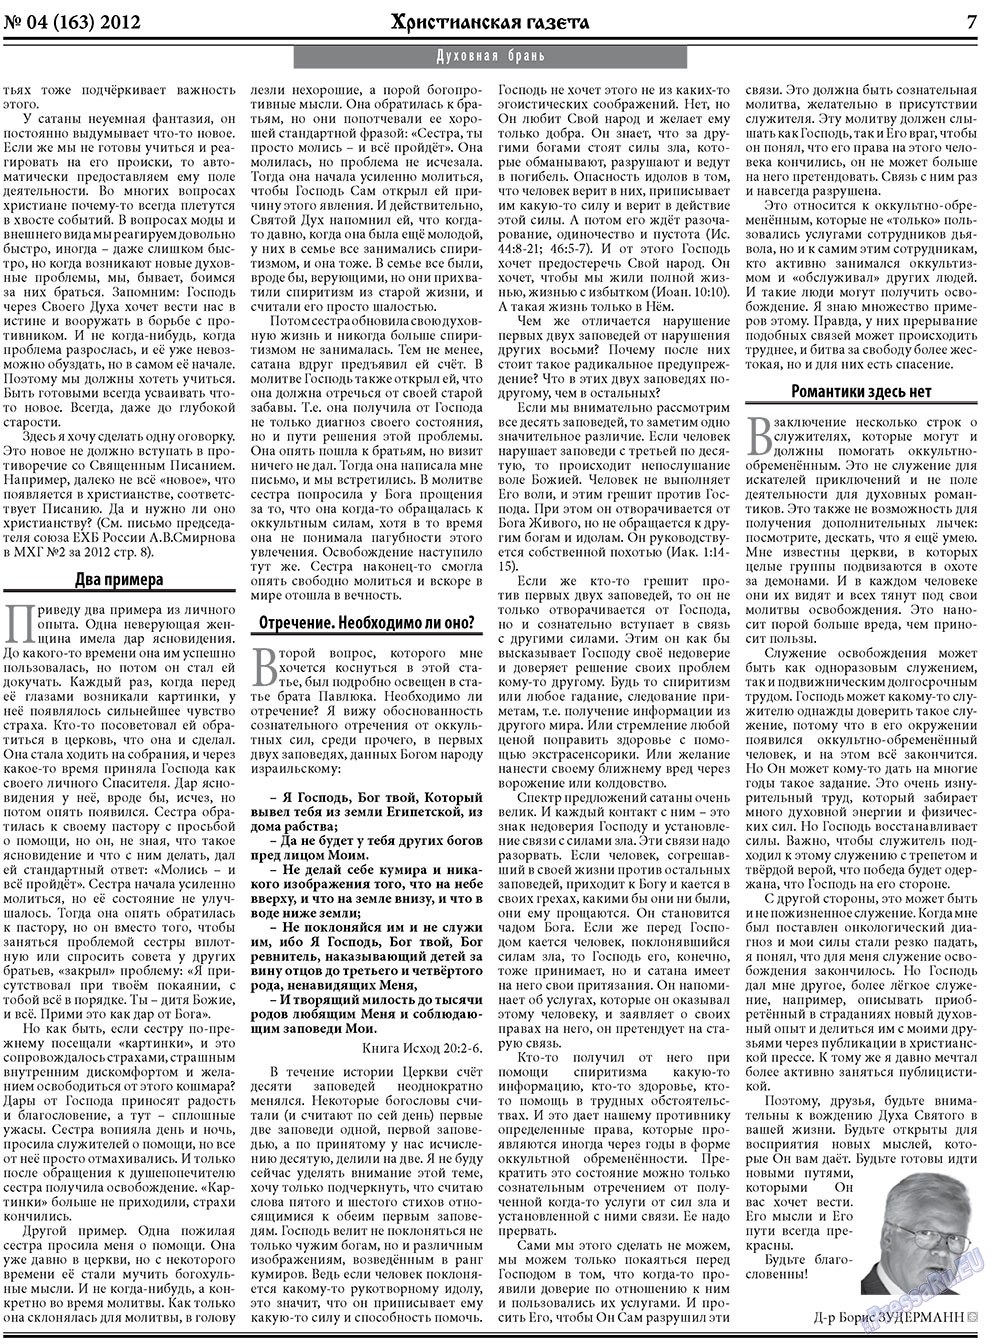 Христианская газета (газета). 2012 год, номер 4, стр. 7